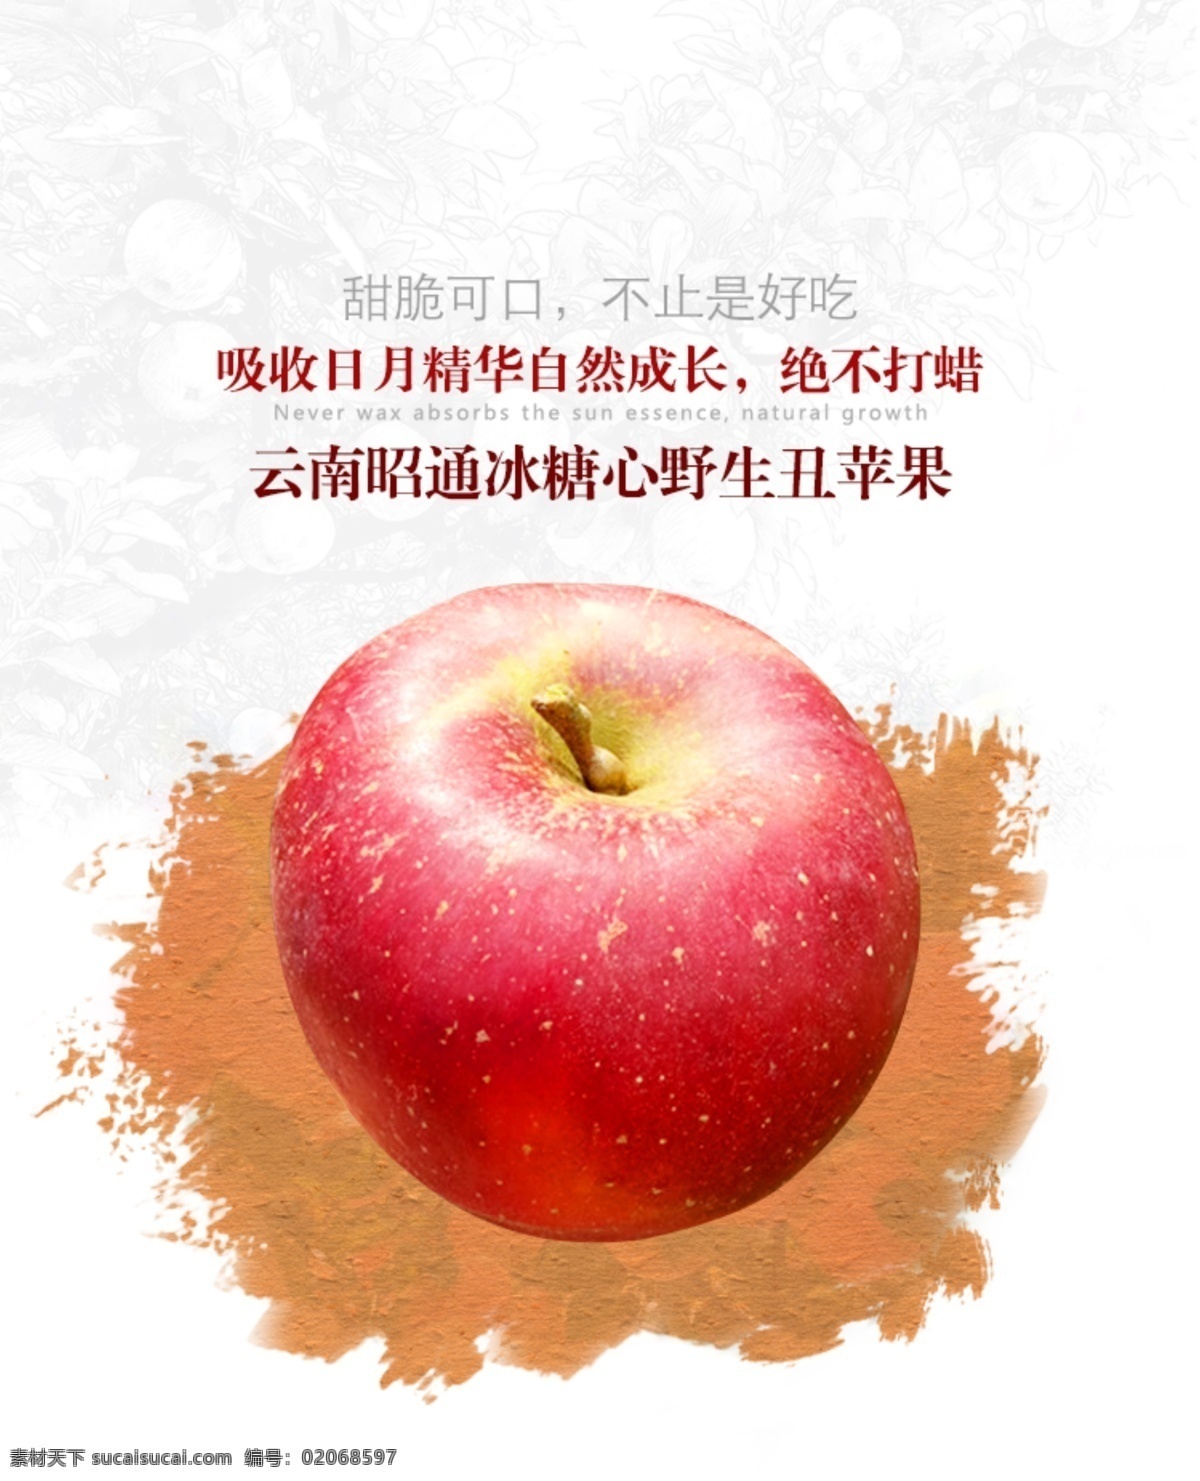 苹果 云南 丑苹果 广告 海报 分层